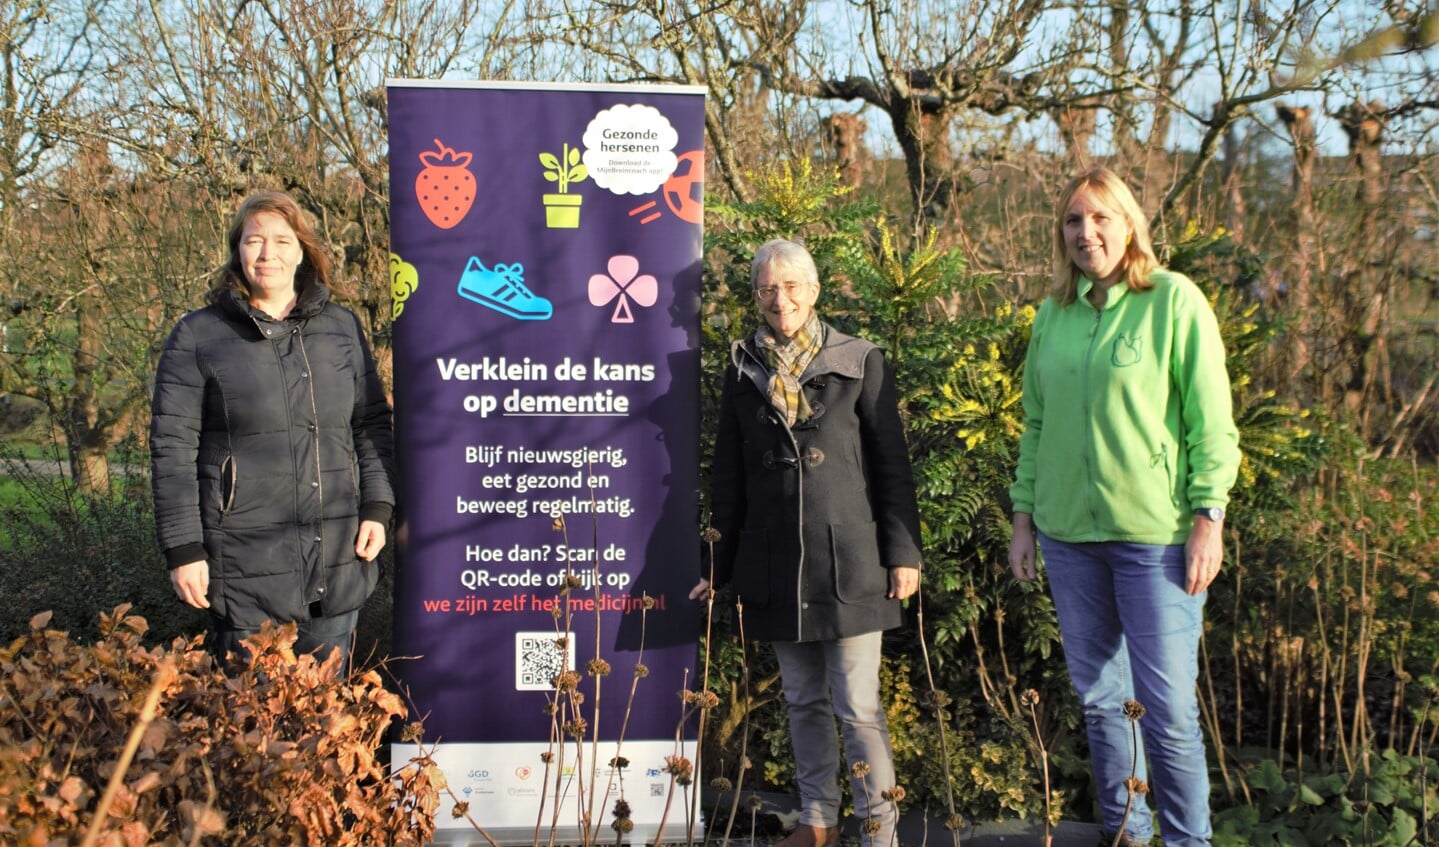 Annemieke Tas, Anja Lens en Suzanne Verboon willen mensen bewust maken wat ze zelf kunnen doen om de kans op dementie te verkleinen. Foto: Robbert Roos